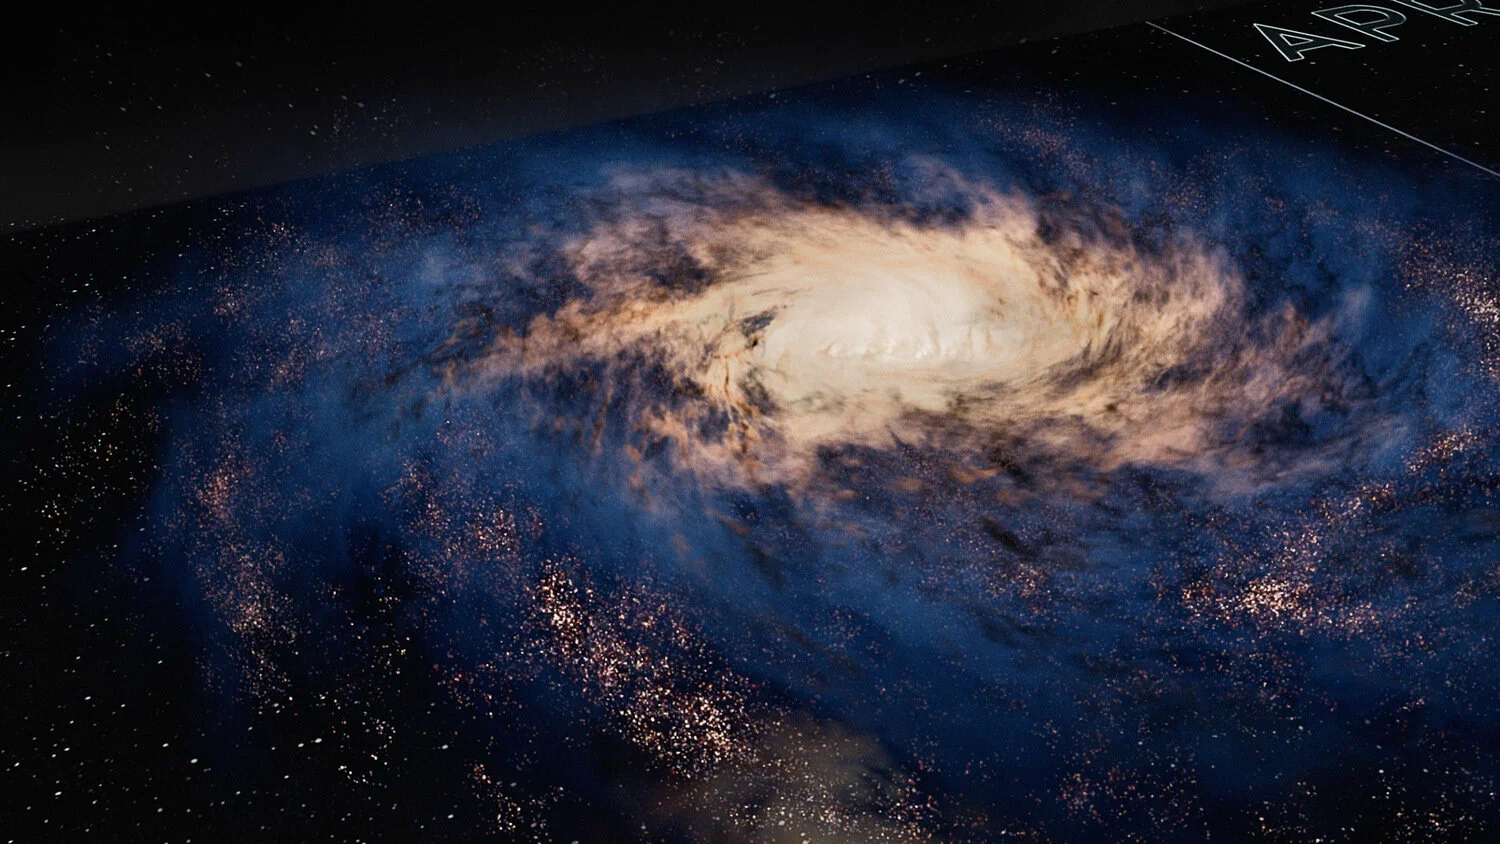 Про космос жизни. Космос: пространство и время (Cosmos: a Spacetime Odyssey), 2014. National Geographic космос. Божественный космос.